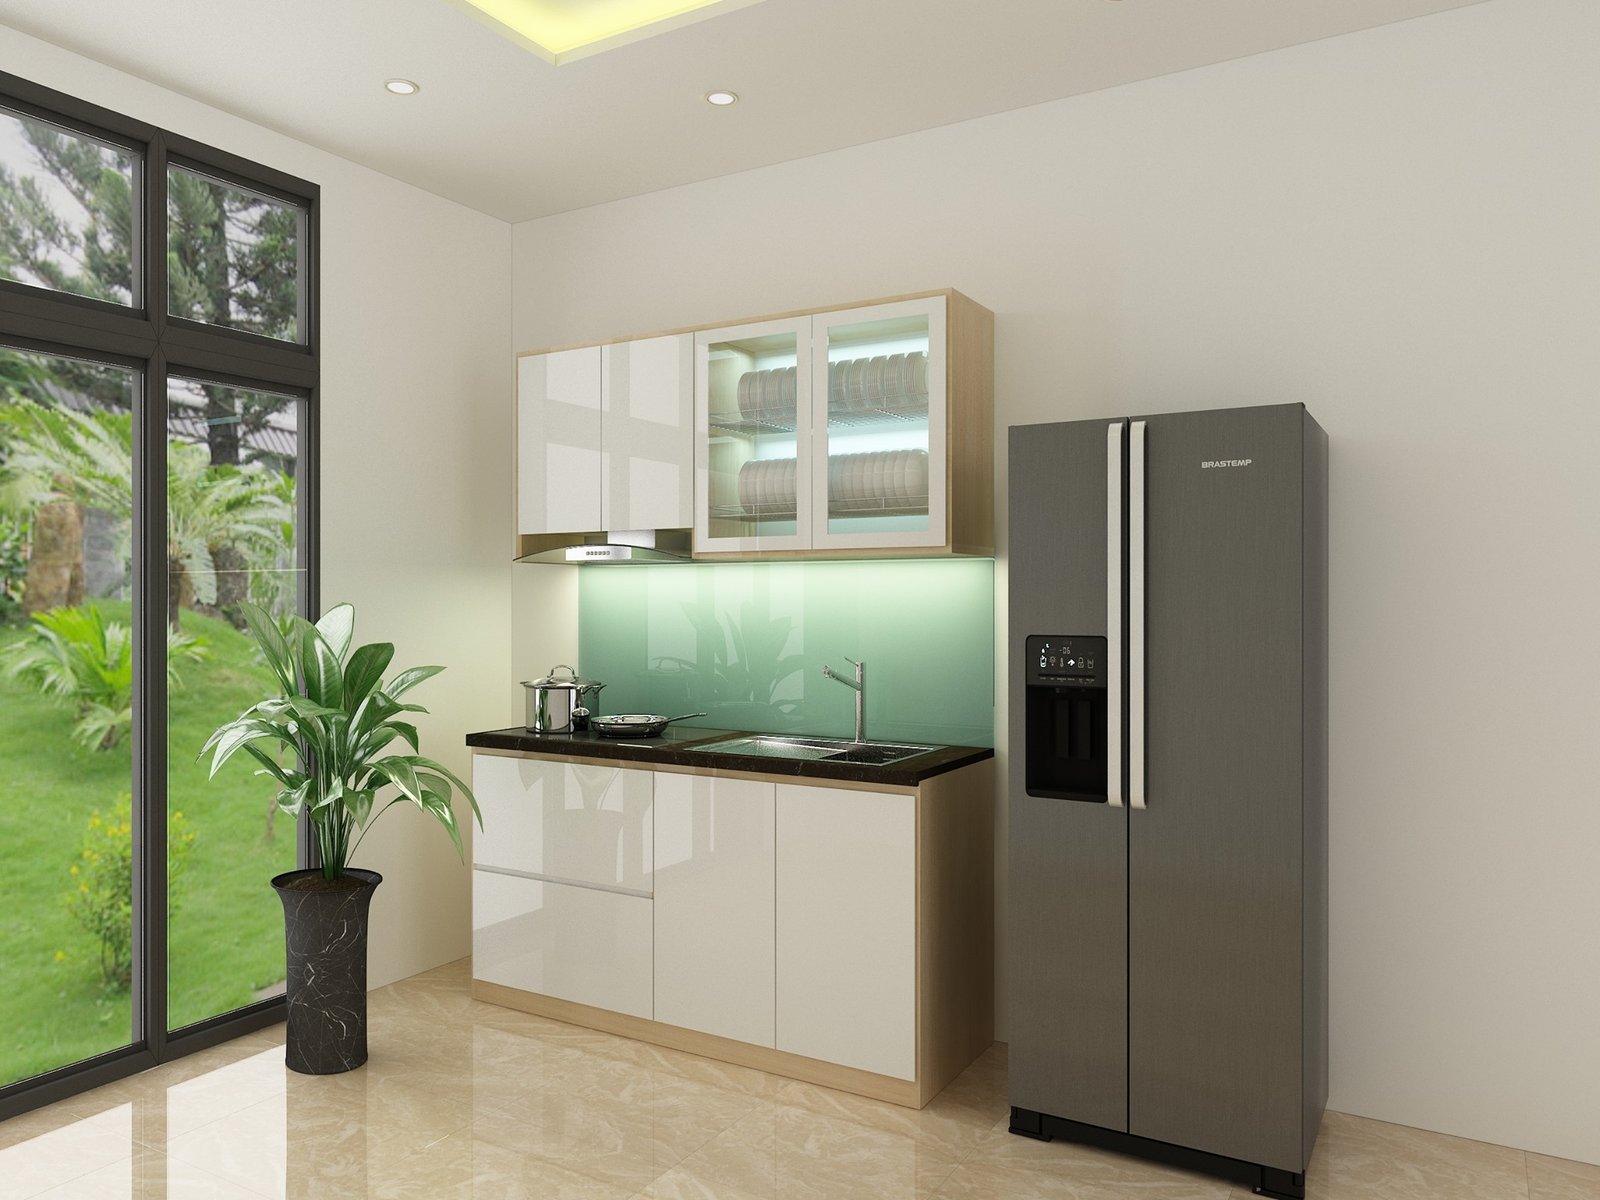 Tủ bếp mini nhựa EcoPlats 2024: Tủ bếp mini nhựa EcoPlats 2024 được thiết kế với chất liệu nhựa nguyên sinh 100% không chứa BPA và là sản phẩm phù hợp với môi trường, giúp tiết kiệm tối đa diện tích nhà bếp của bạn. Sản phẩm được cải tiến liên tục để đáp ứng tất cả nhu cầu của khách hàng. Hãy cùng khám phá những sản phẩm tủ bếp mini nhựa EcoPlats 2024 của chúng tôi để sở hữu một không gian nhà bếp xanh và hiện đại.